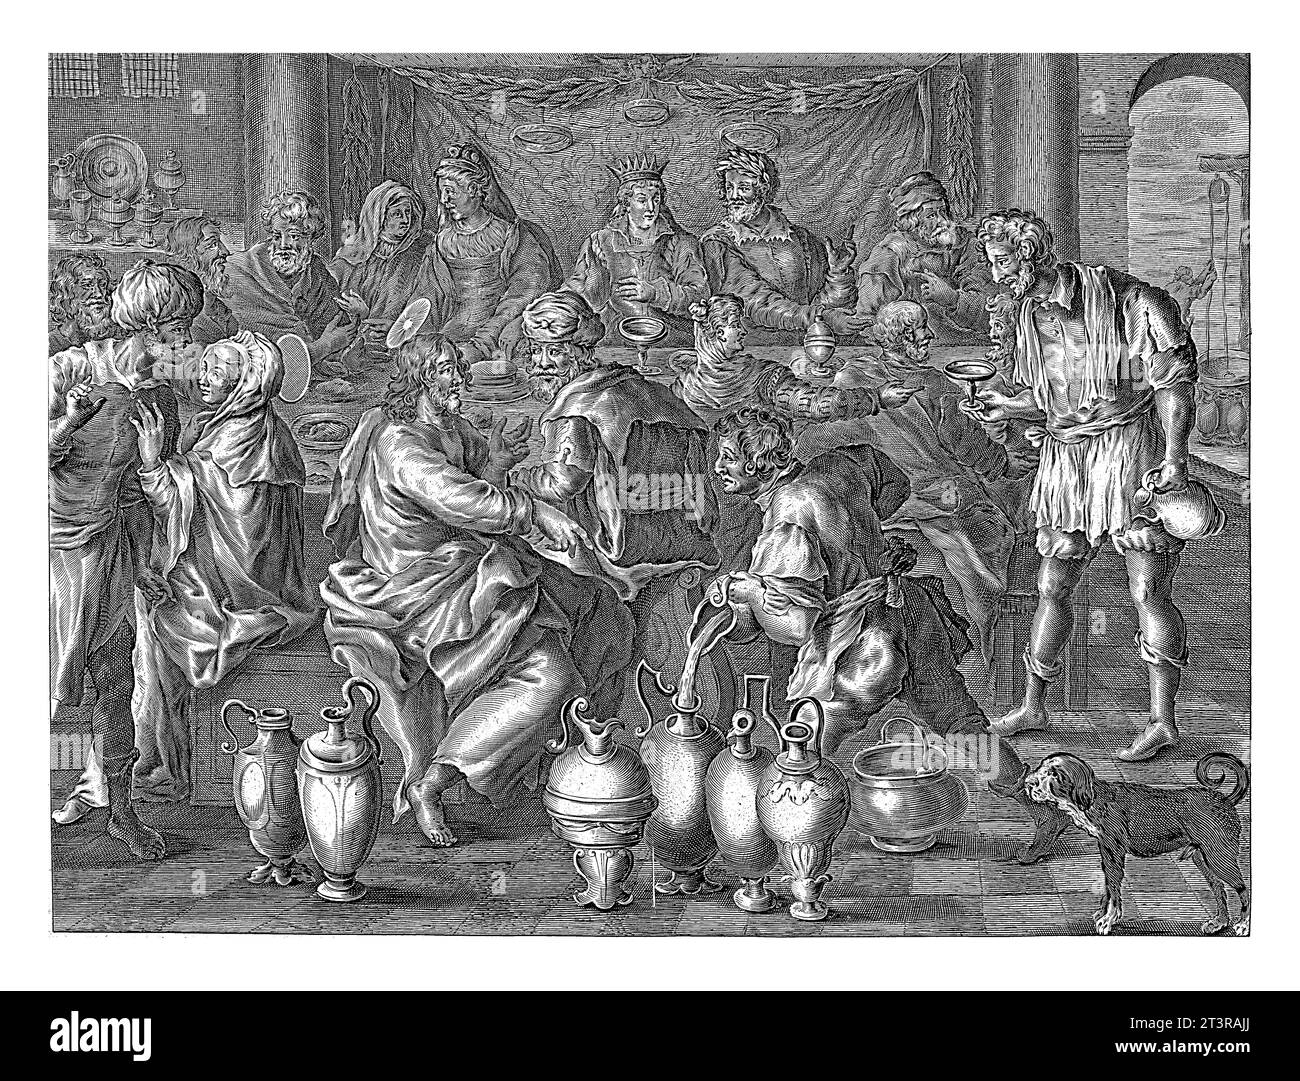 Hochzeit in Cana, anonym, nach Adriaen Collaert, nach Maerten de Vos, 1679 - 1702 bei der Hochzeit in Cana bestellt Christus sechs Gläser, damit sie gefüllt werden Stockfoto